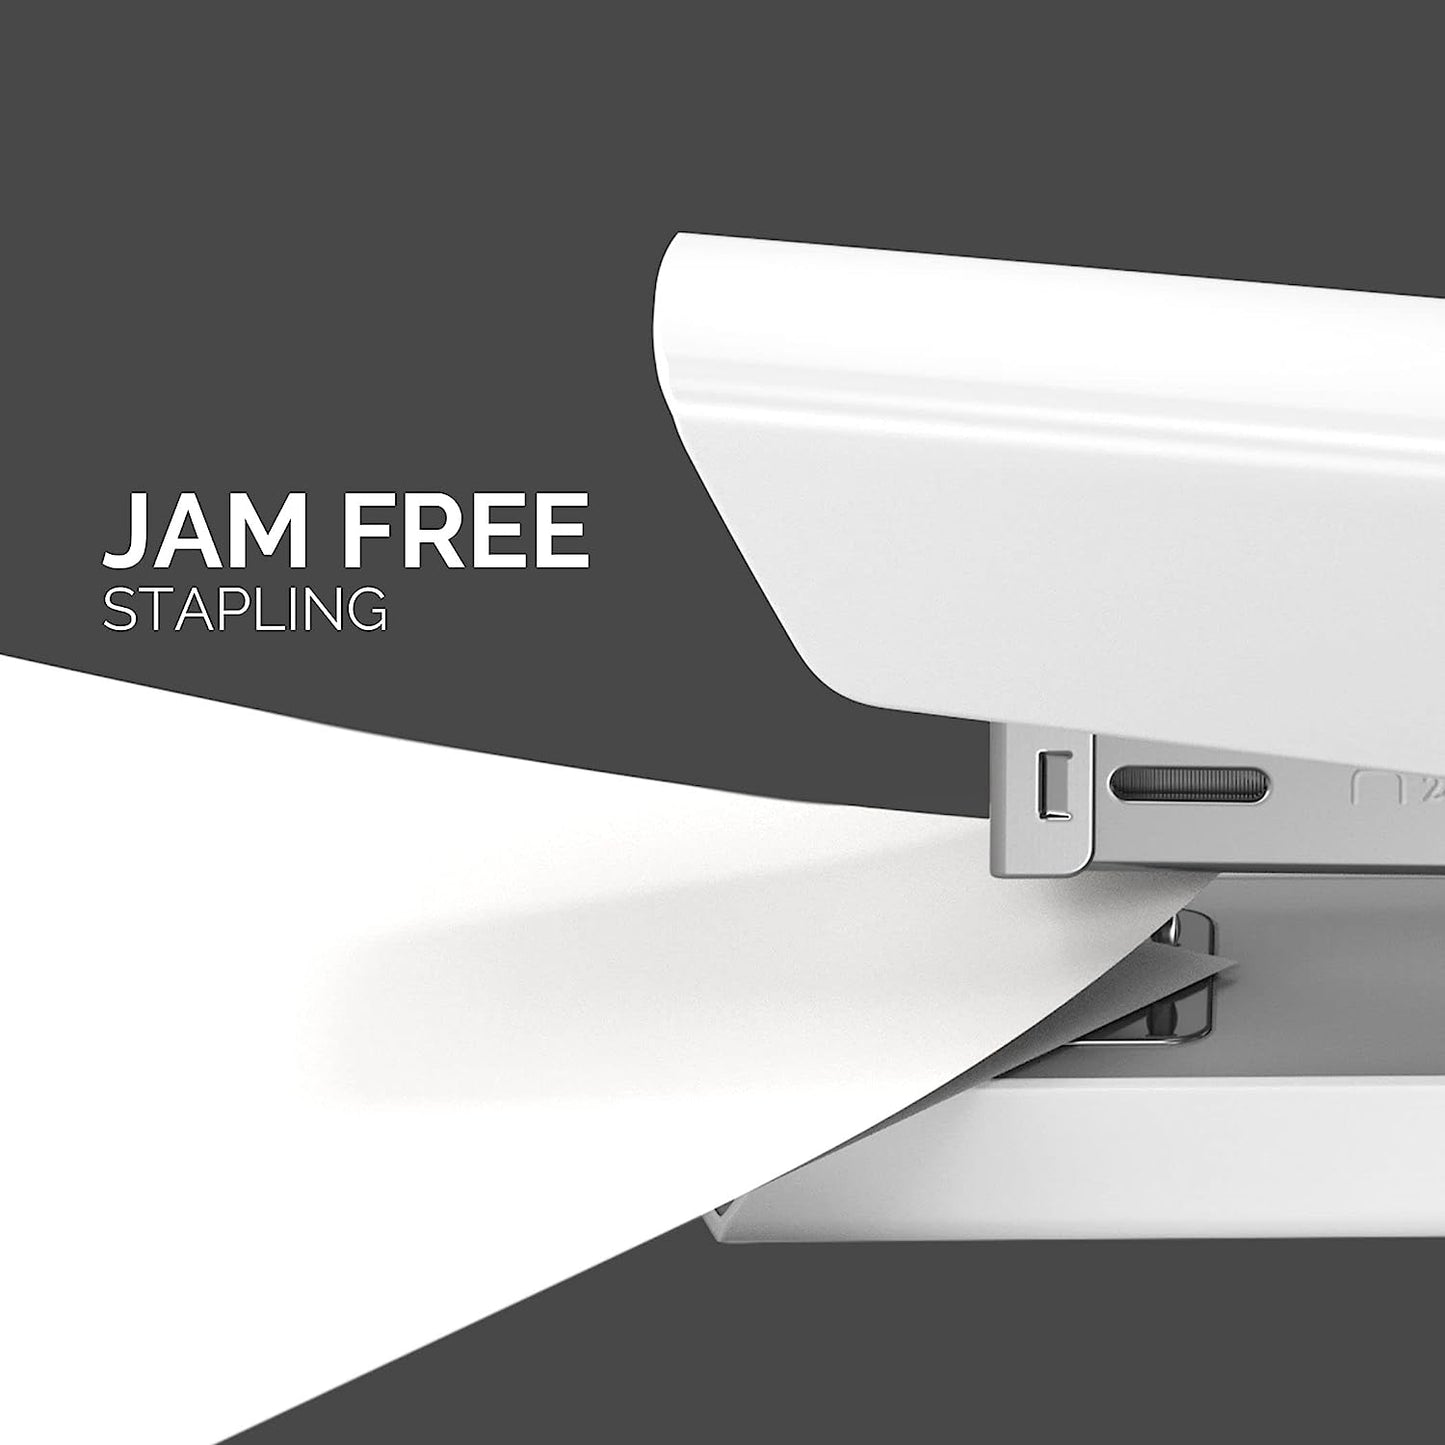 Fellowes Jam Free Stapler, 20 Sheet Capacity - LX820 Full Strip Antibacterial Manual Stapler- Uses Both 24/6mm and 26/6mm Staples